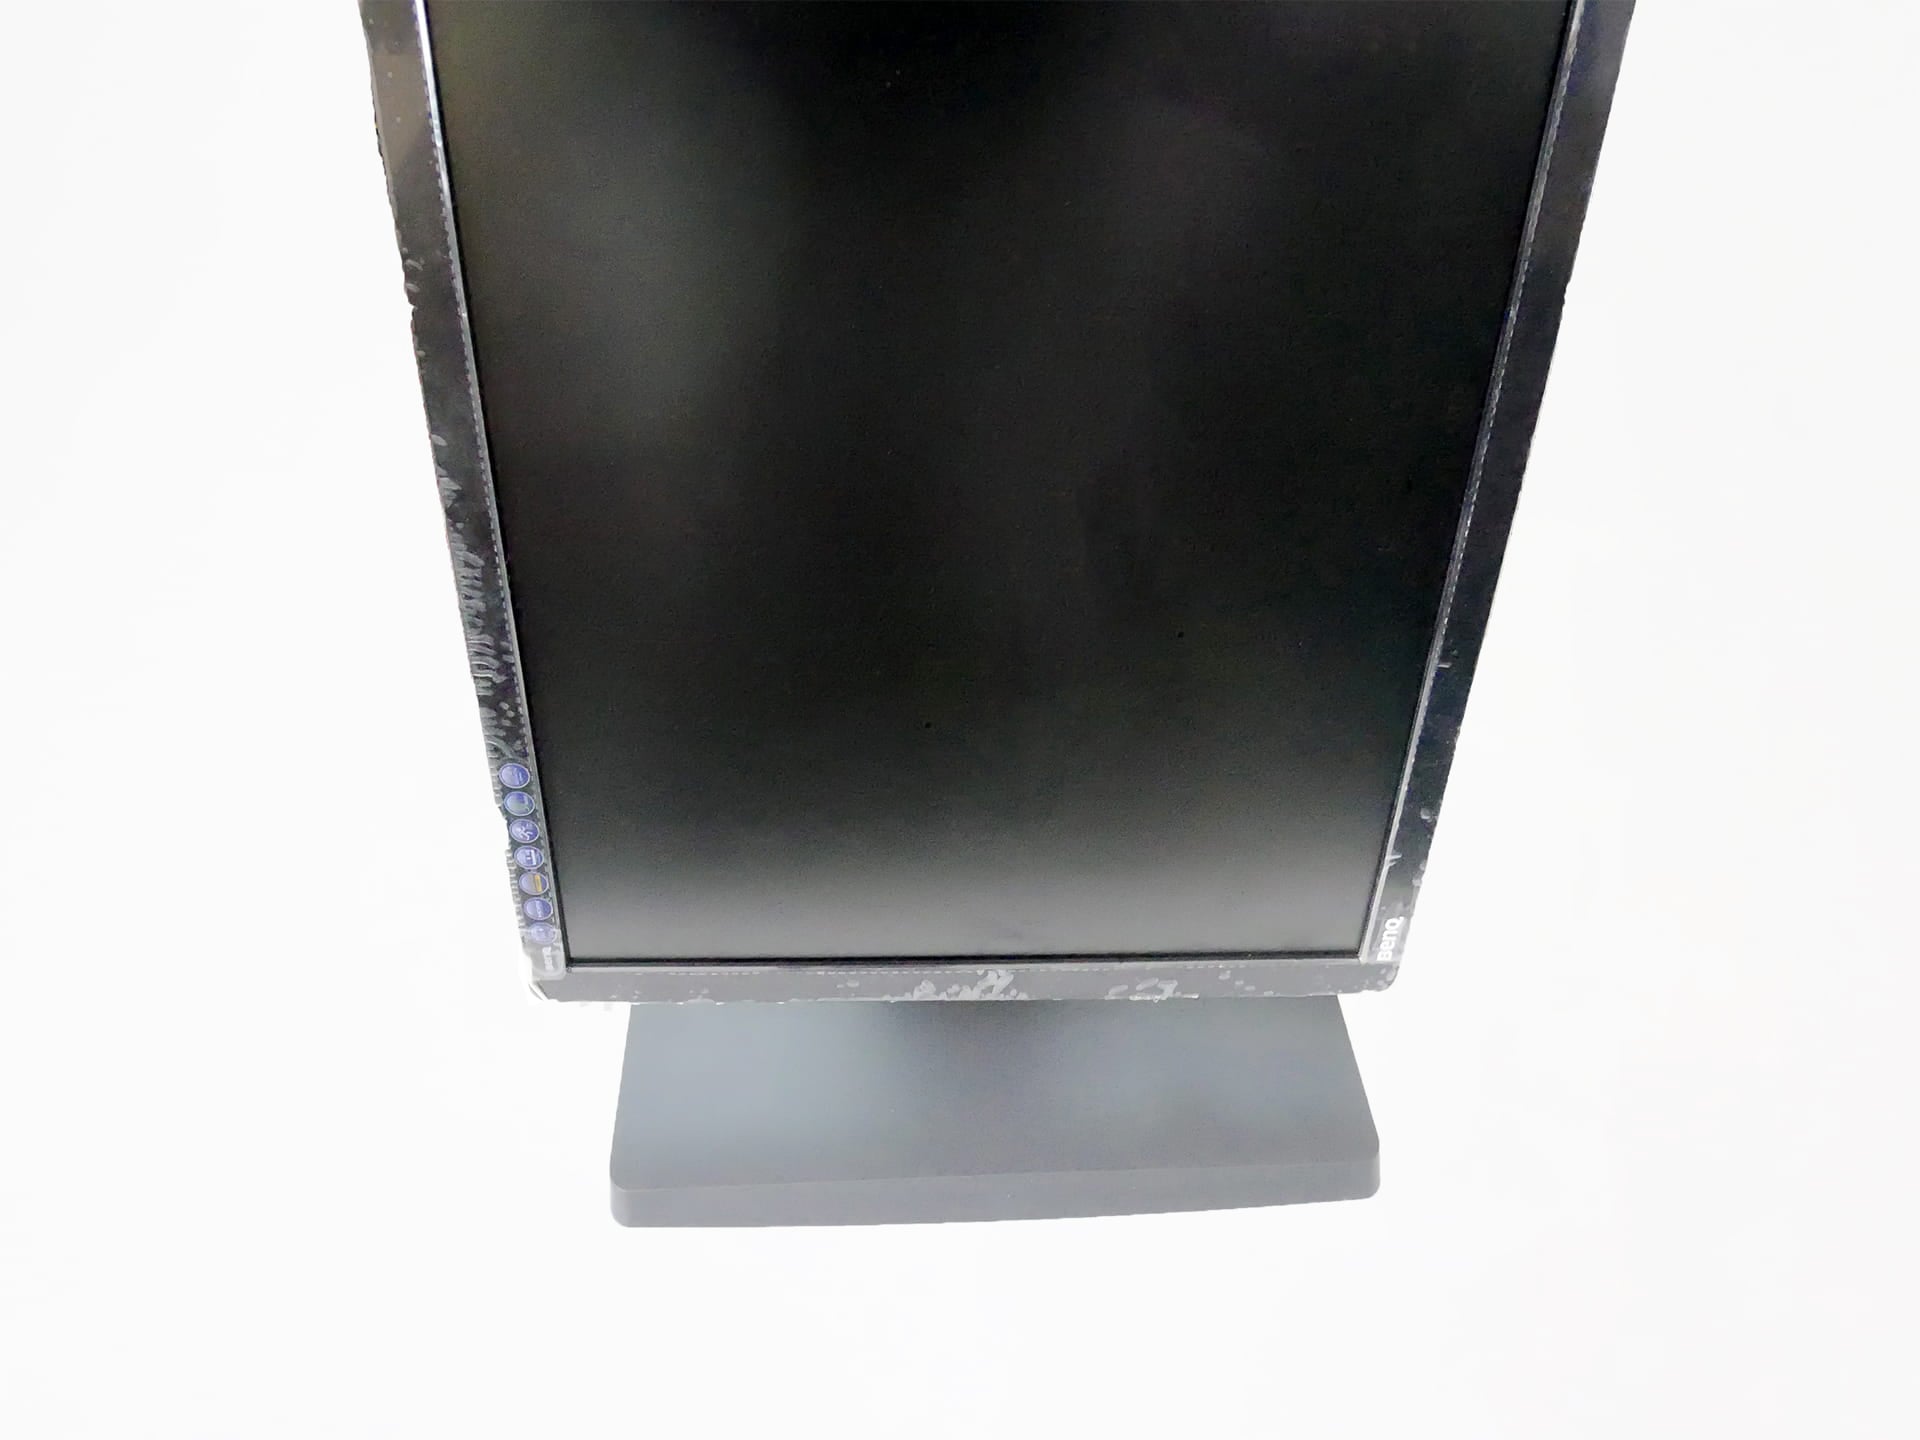 Amazonベーシック LCDモニタースタンドで縦にモニタを回転させた状態